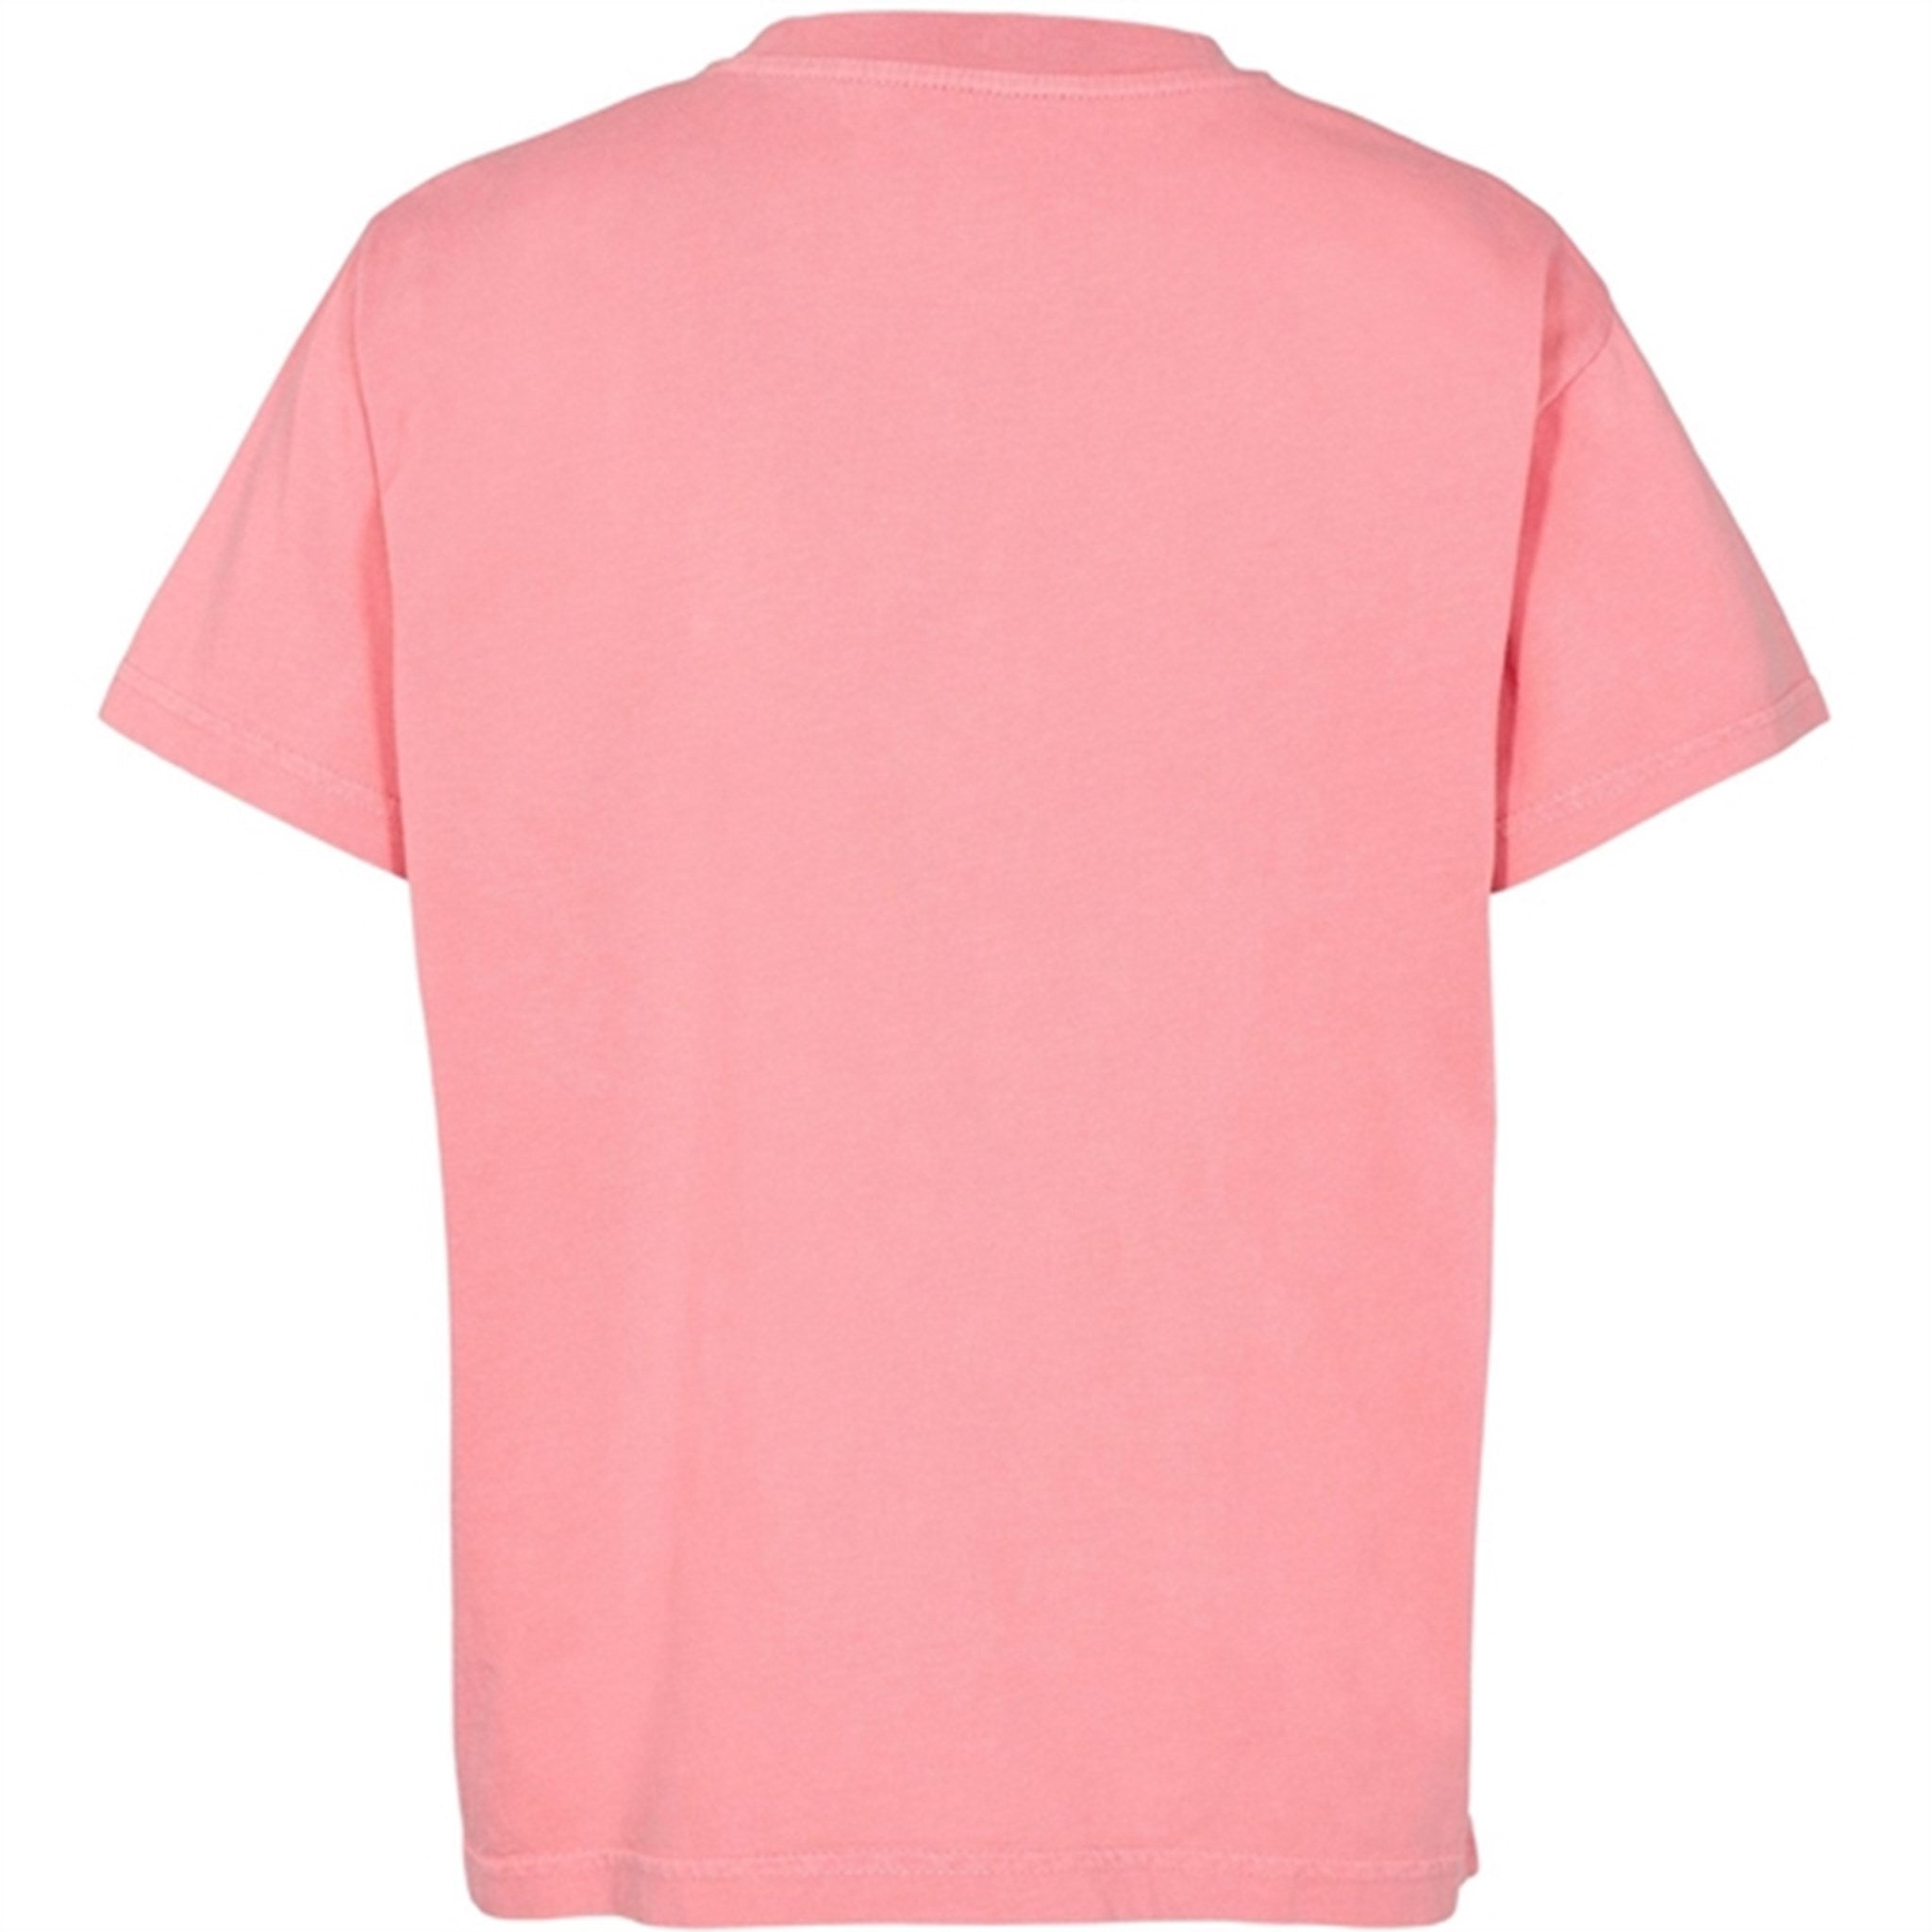 Sofie Schnoor Pink T-shirt 7